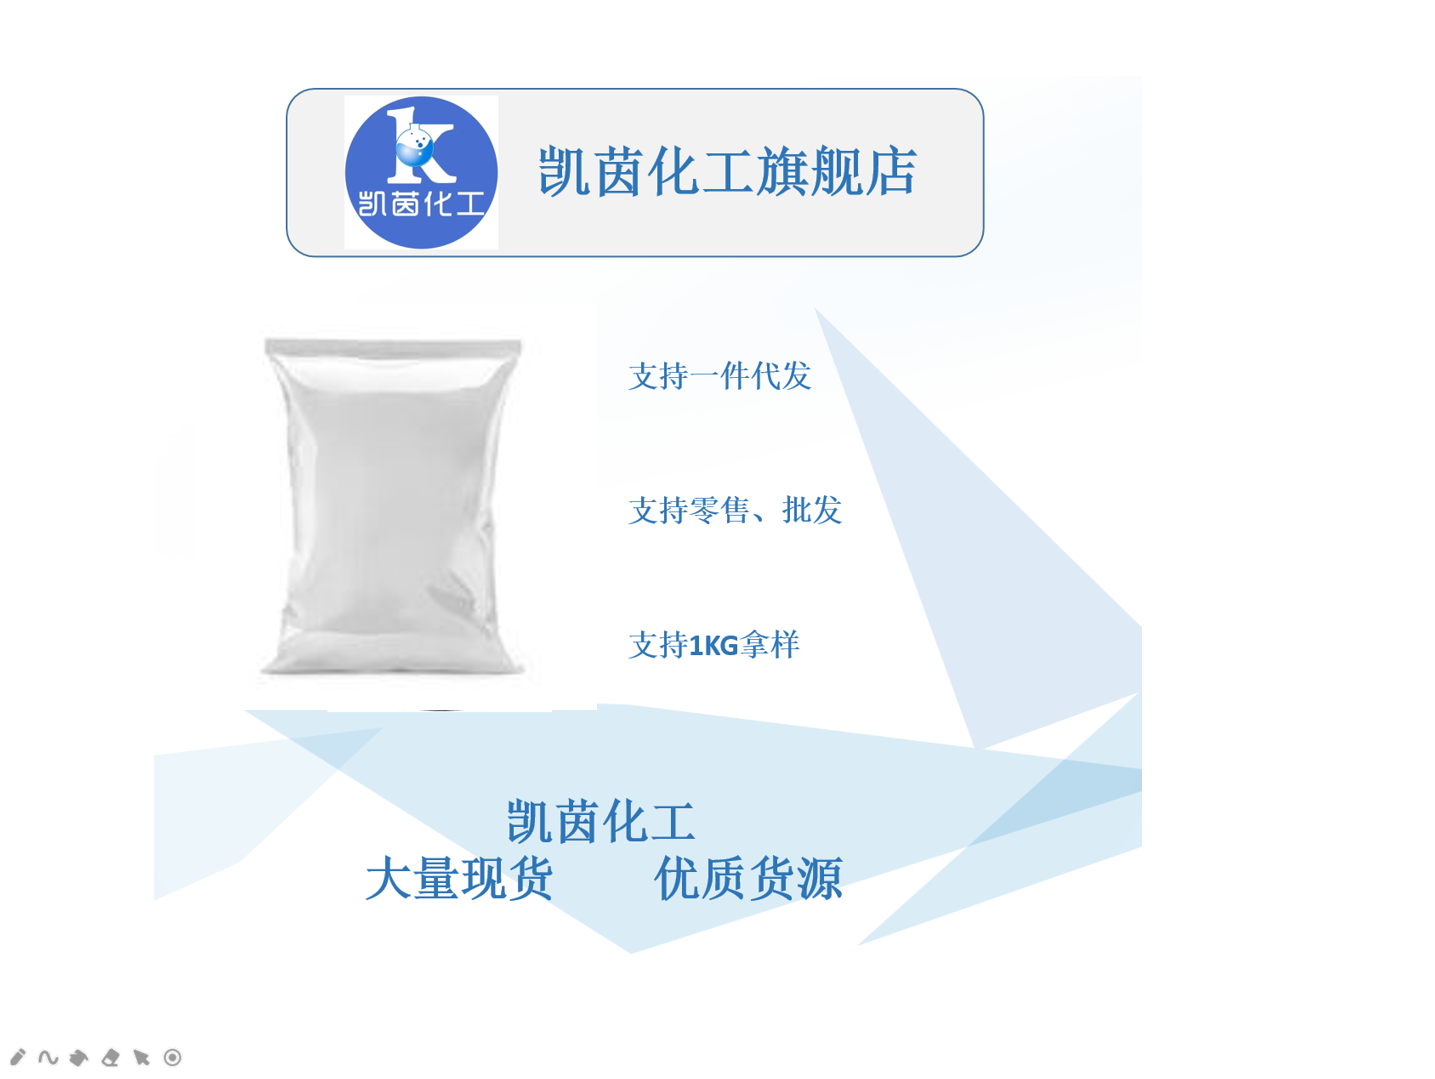 矽比科 BR-4 高岭土 高纯度 微细硅微粉 橡胶化合物专用添加剂